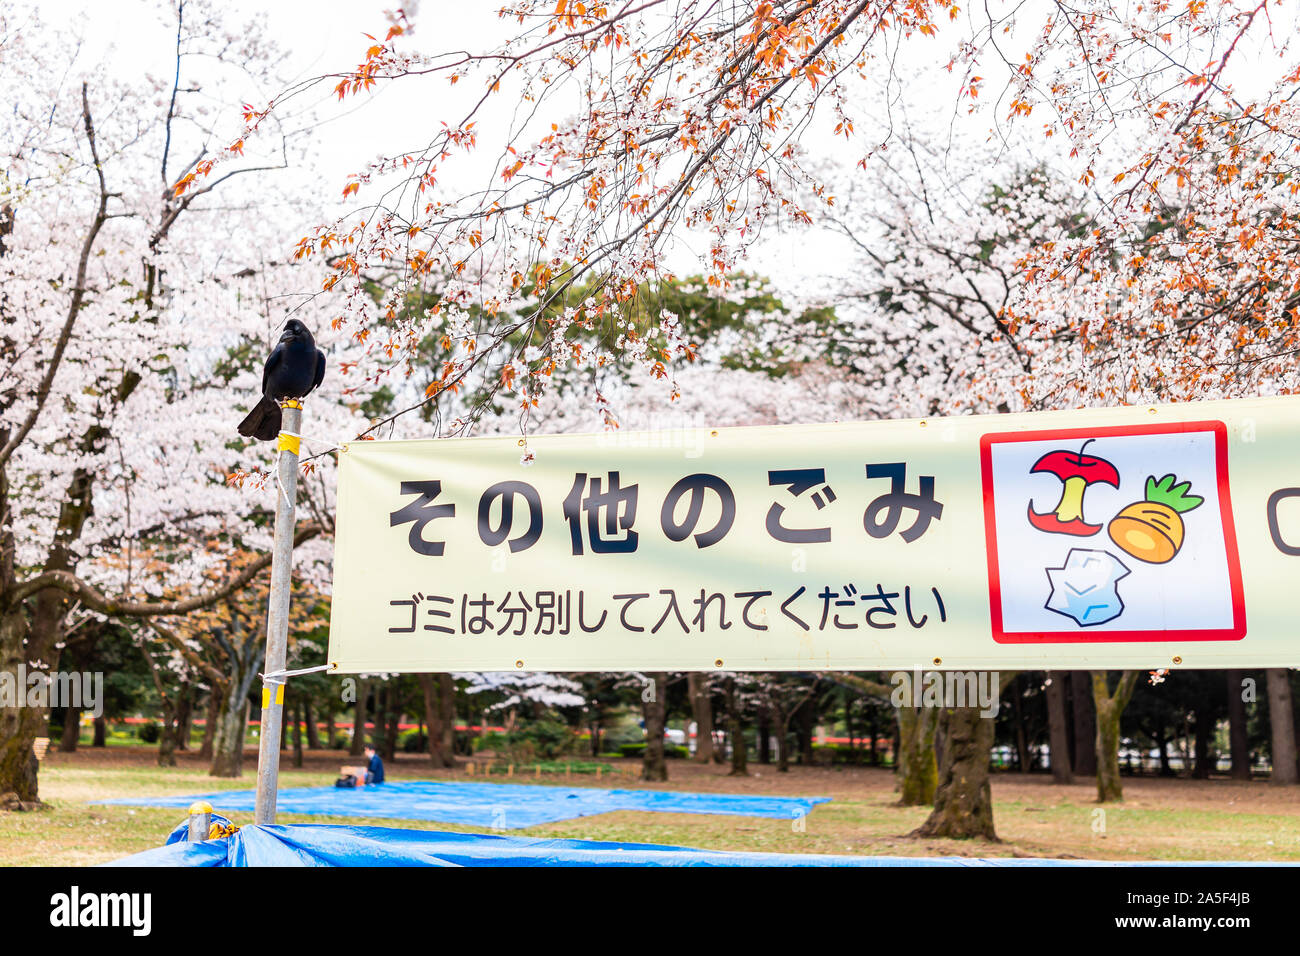 Tokyo, Japan - 28. März 2019: Yoyogi Park mit Vorzeichen Banner als Richtlinie Essen im Papierkorb und ein großer schwarzer Rabe Vogel zu werfen übersetzt gehockt Stockfoto